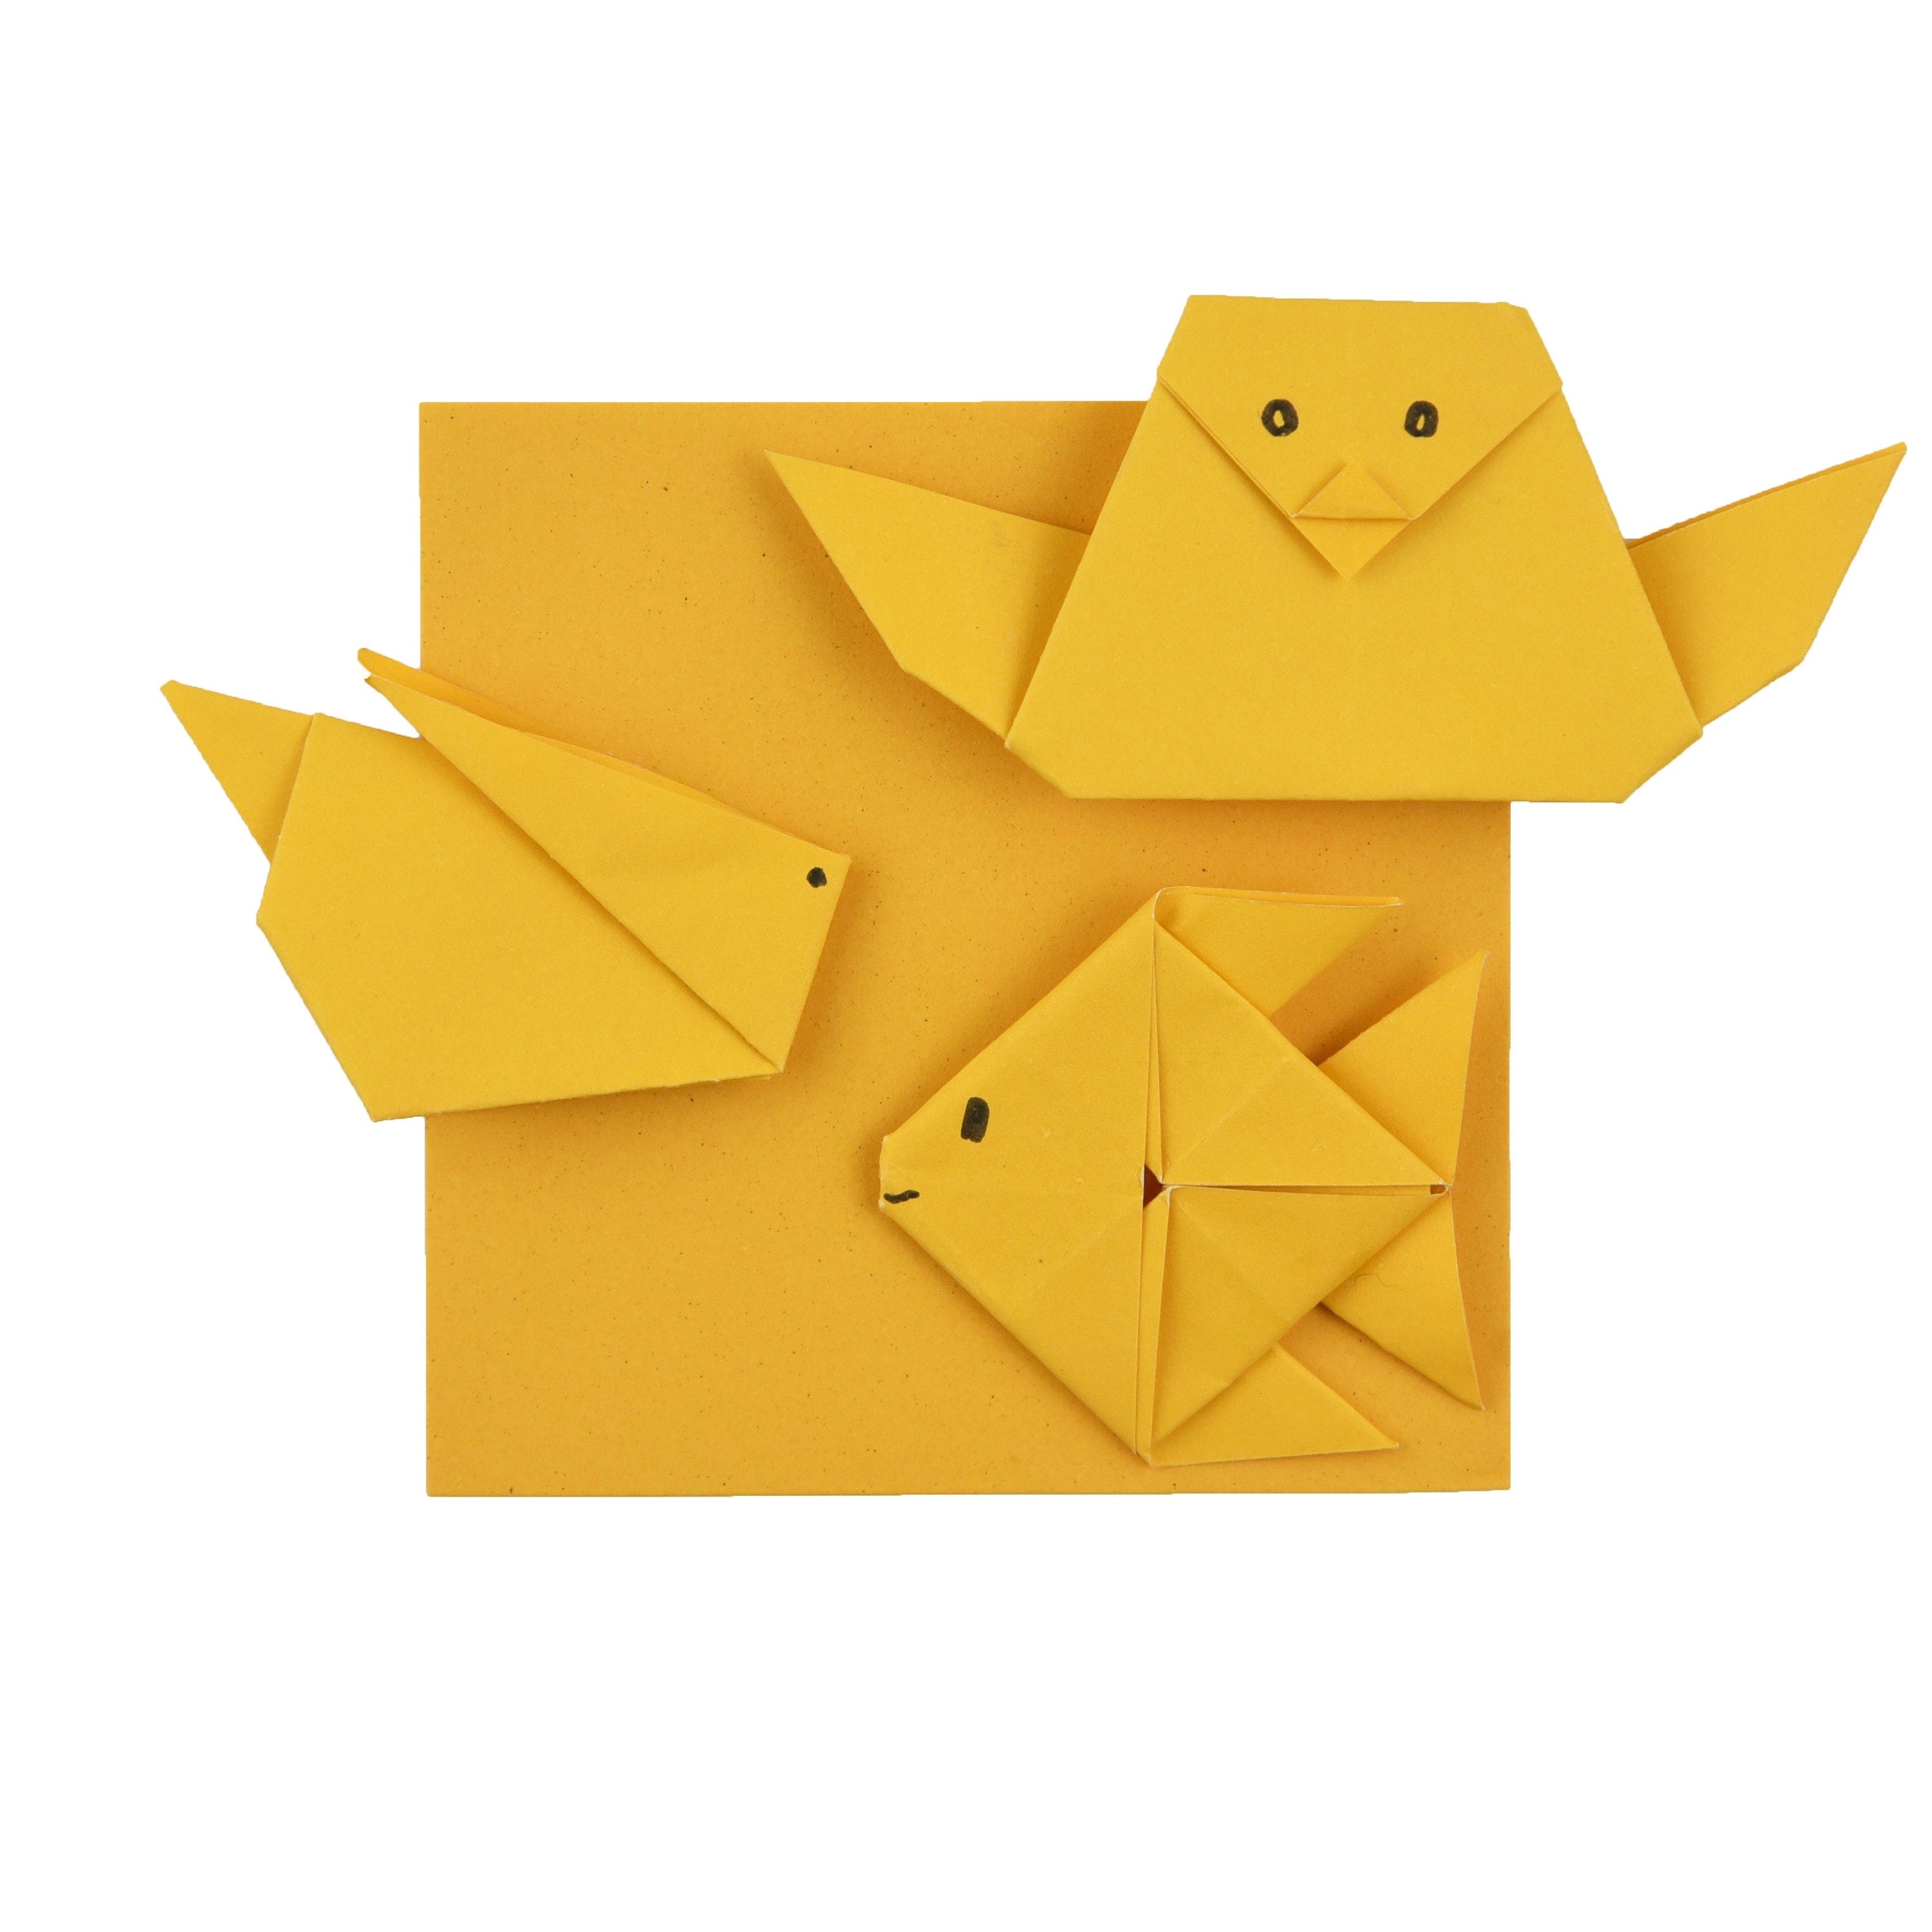 100 fogli di carta origami - 3x3 pollici - Confezione di carta quadrata per piegare, gru origami e decorazioni - S26